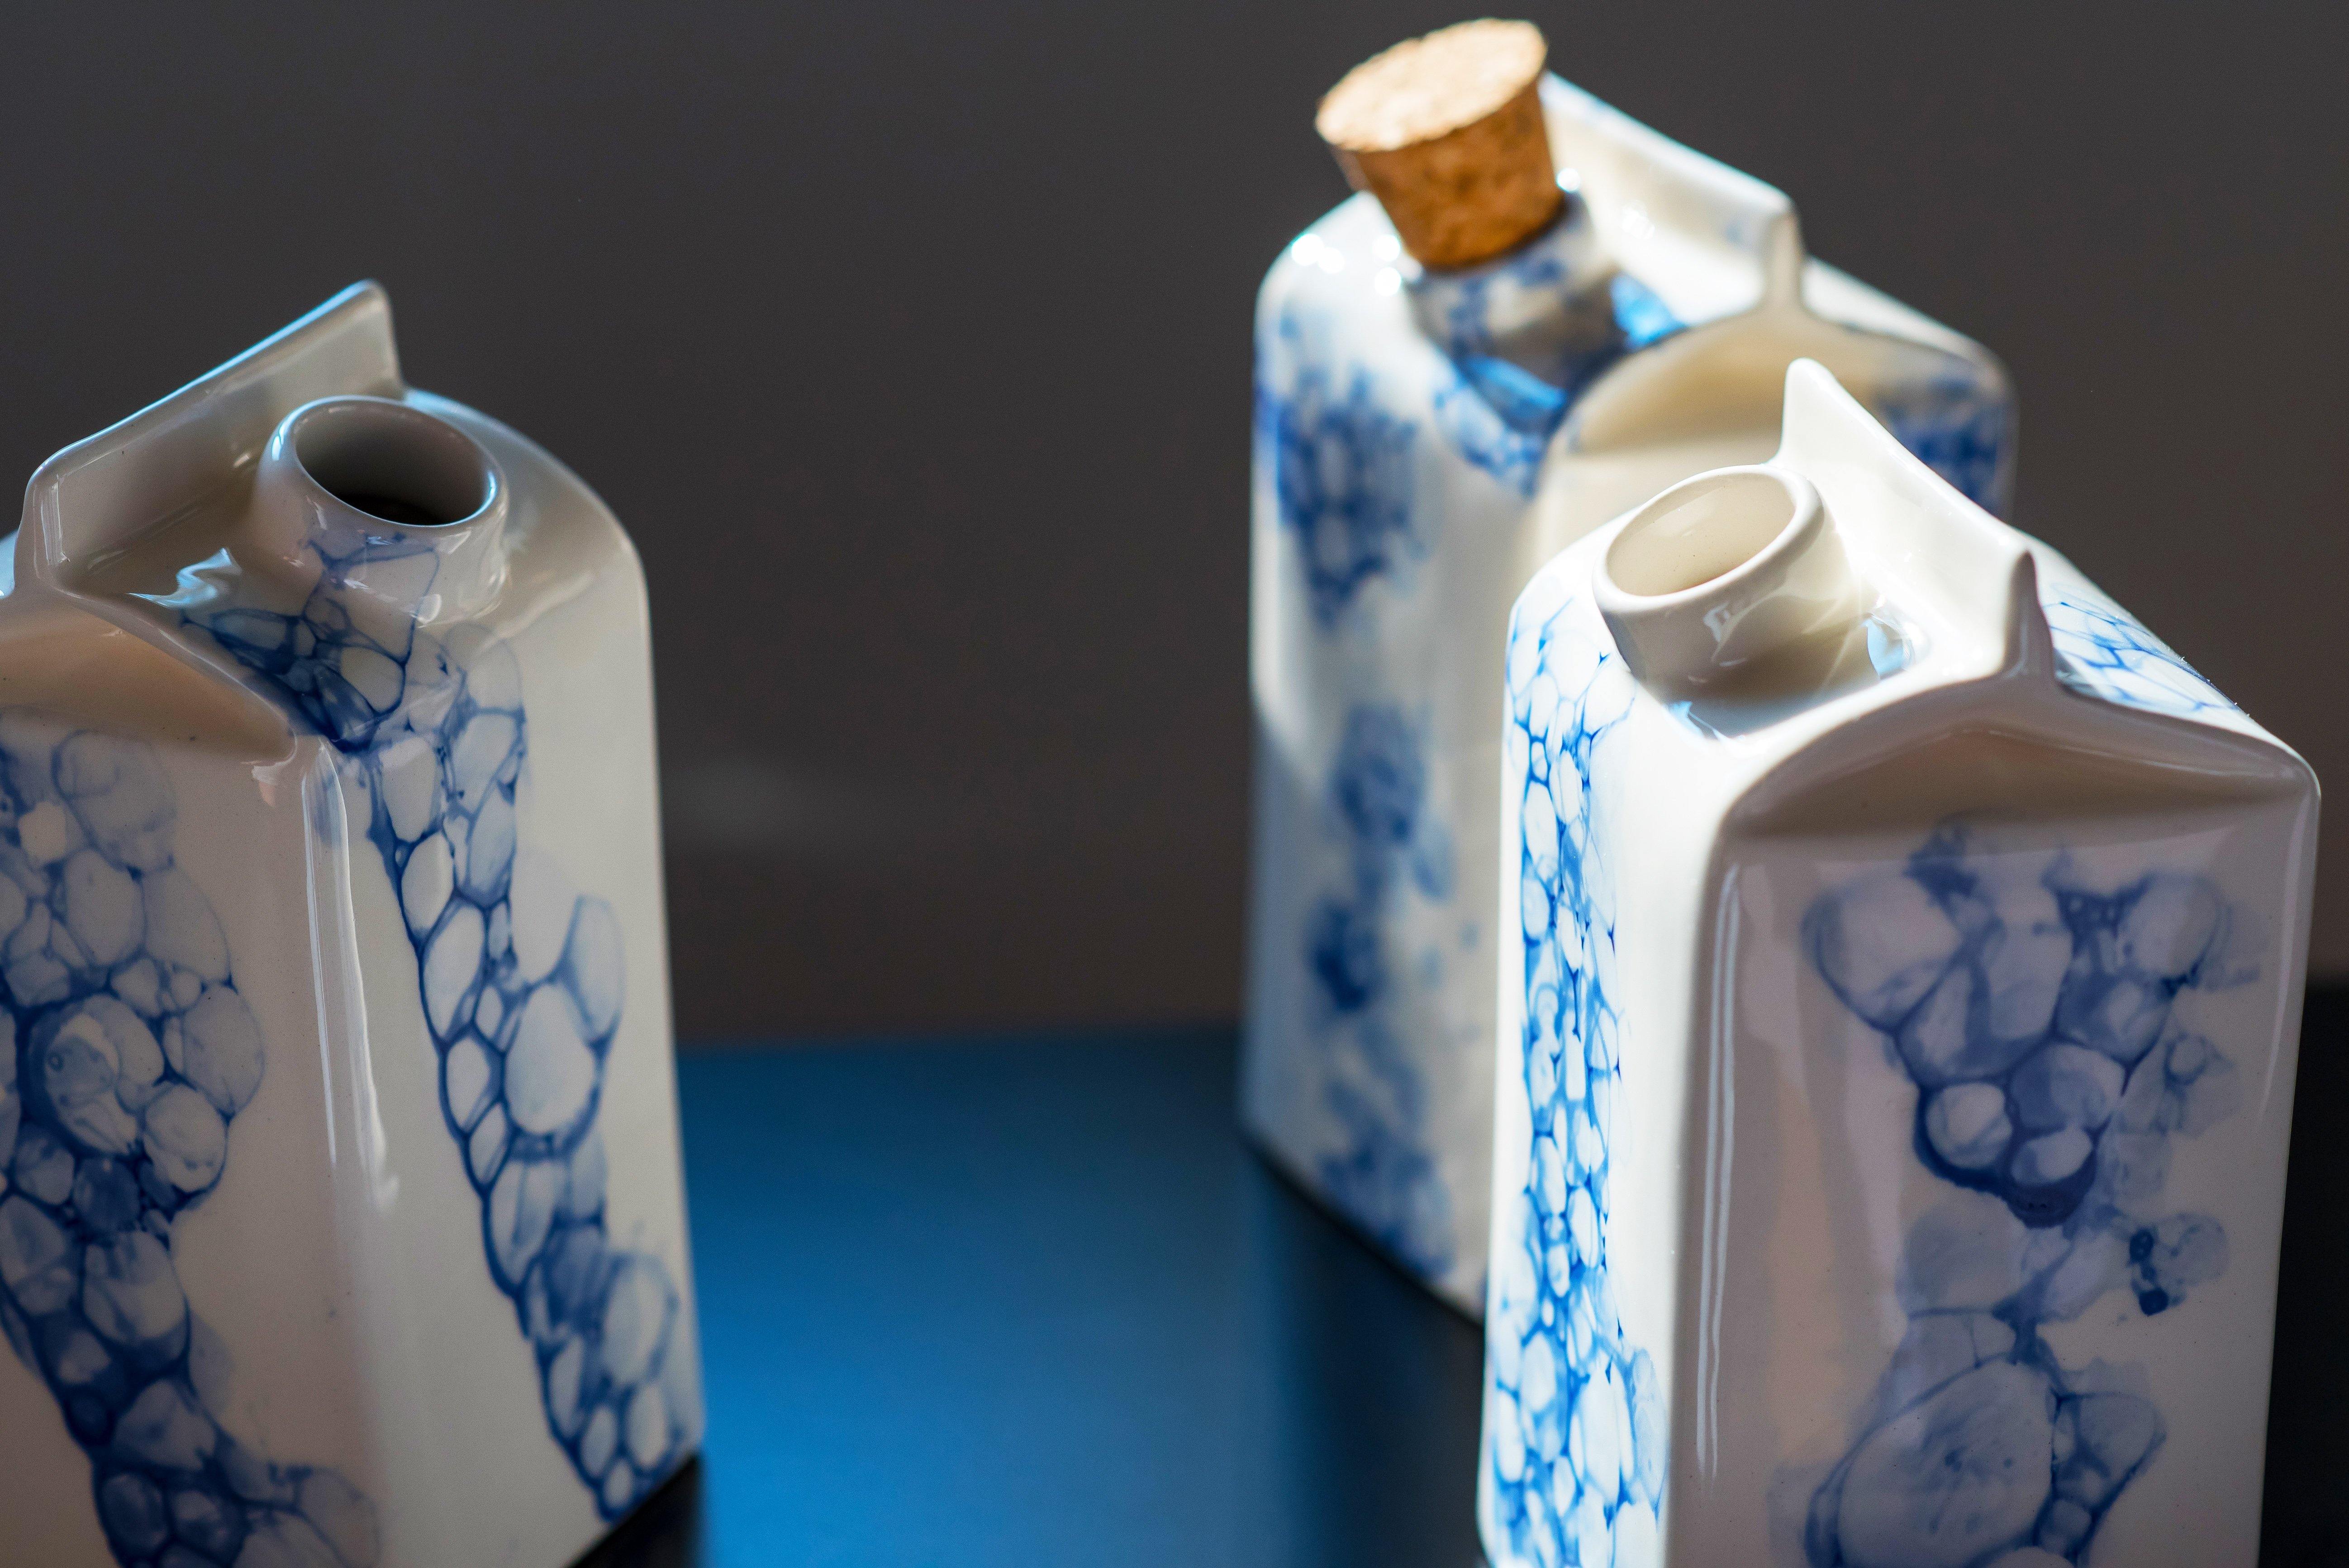 Porcelain small milk bottle/vase - white with blue bubbles - ZLATNAporcelain